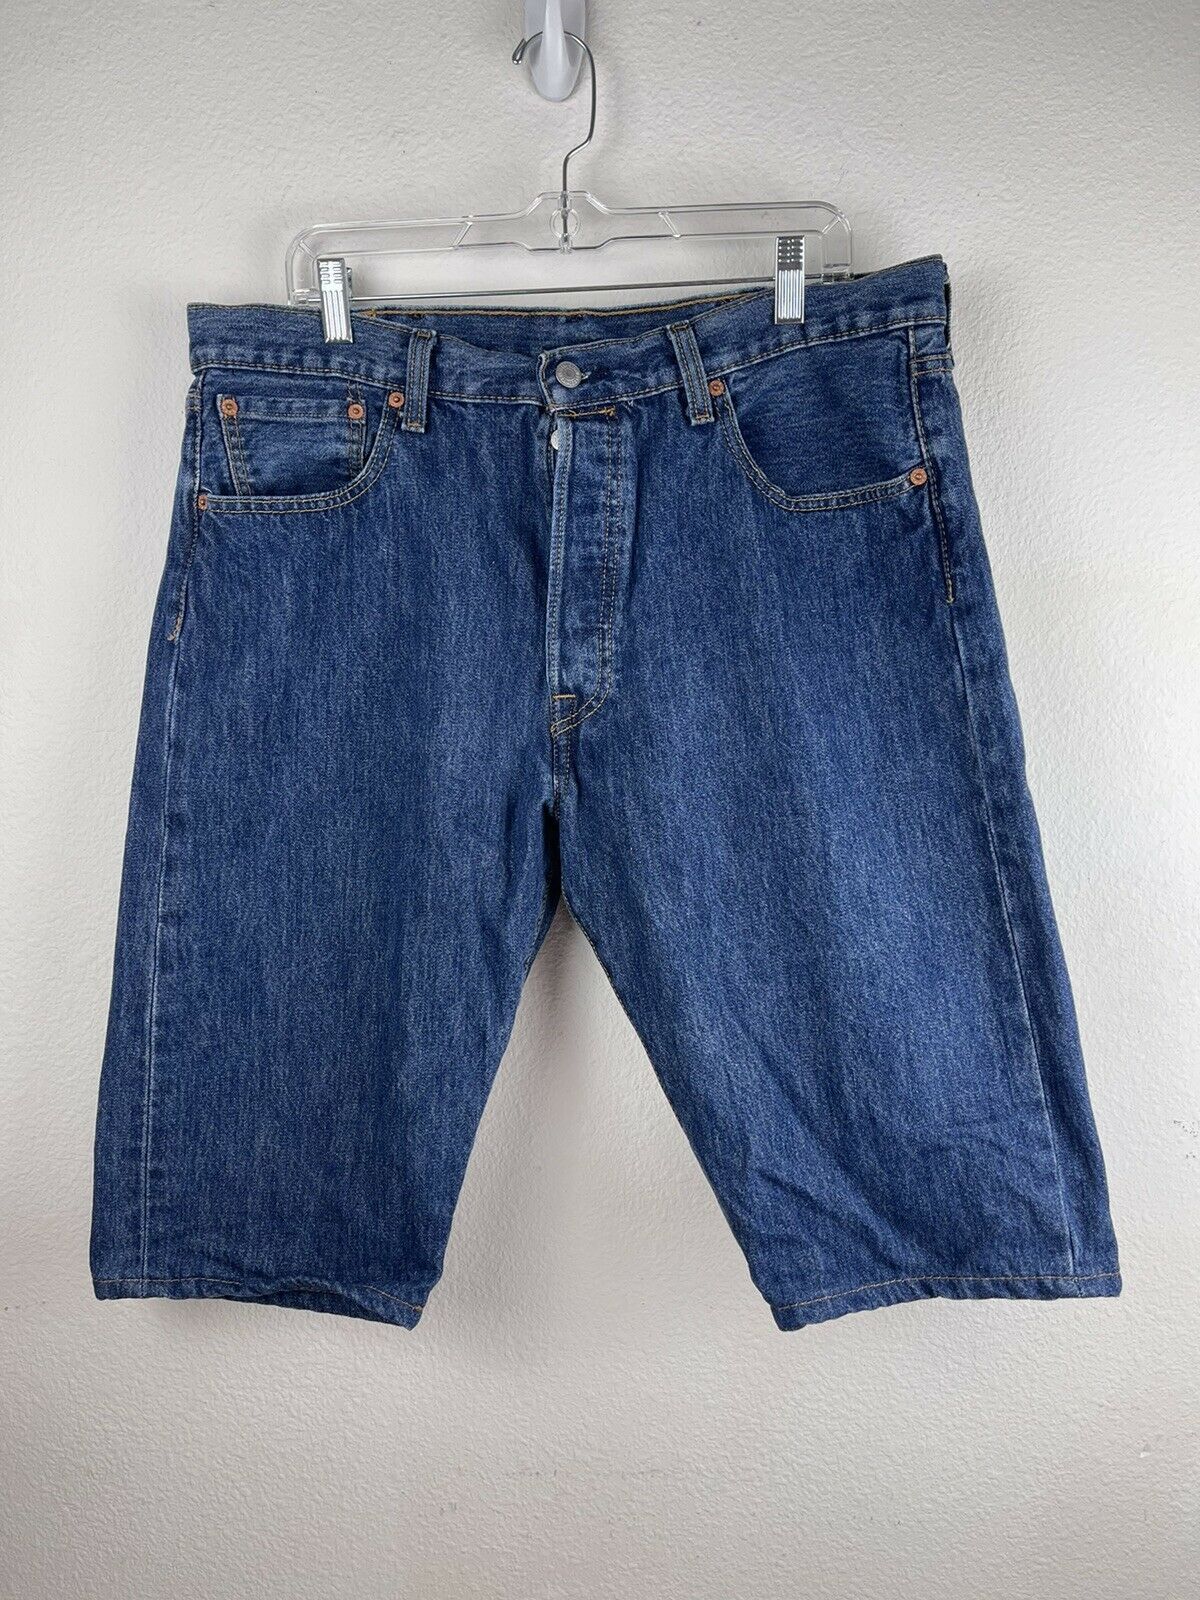 Levis 501 Mens Blue Denim Shorts 38x14 Cotton Button Fly S40196 - Shorts